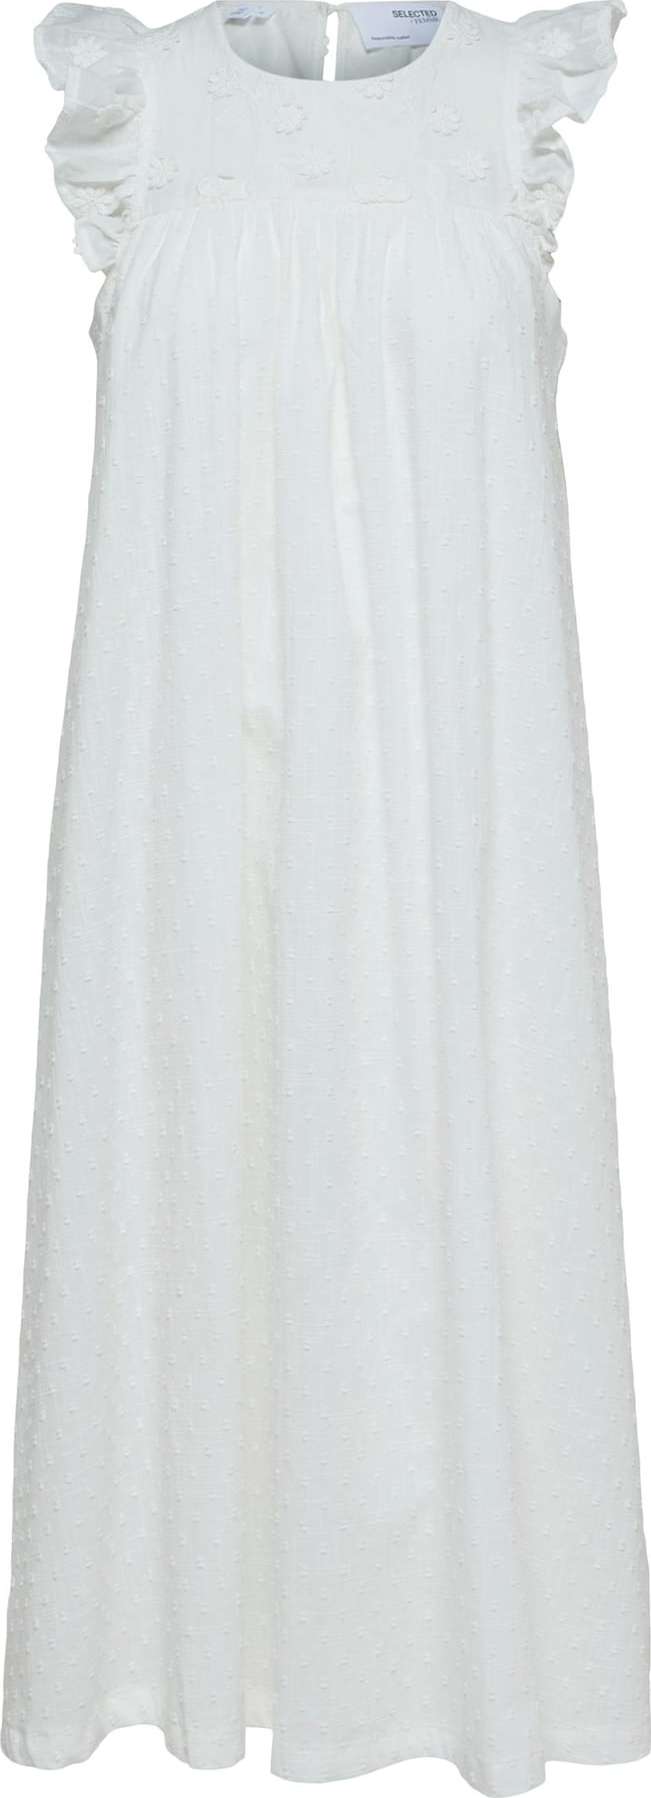 SELECTED FEMME Košilové šaty 'Bett' bílá